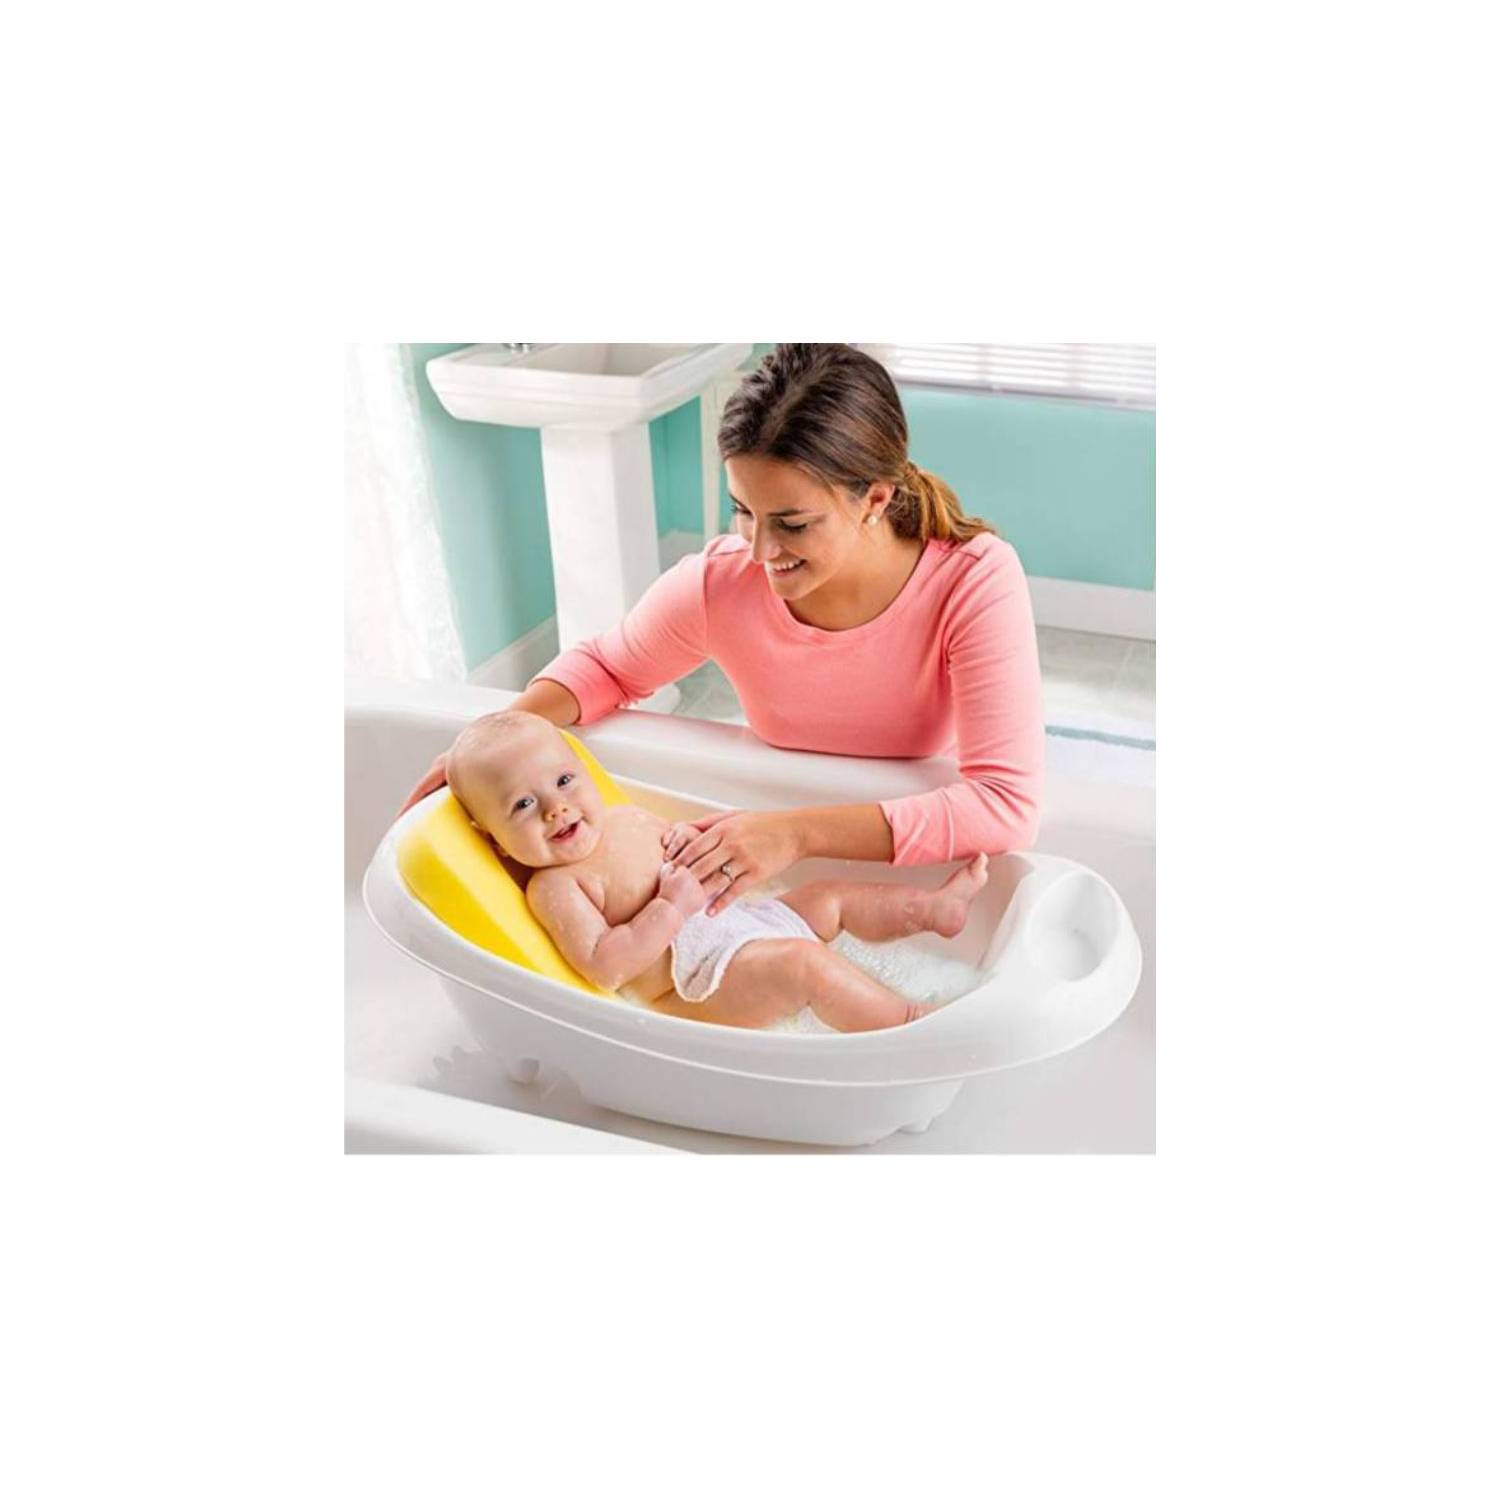 Esponja de baño para bebes Extra suave